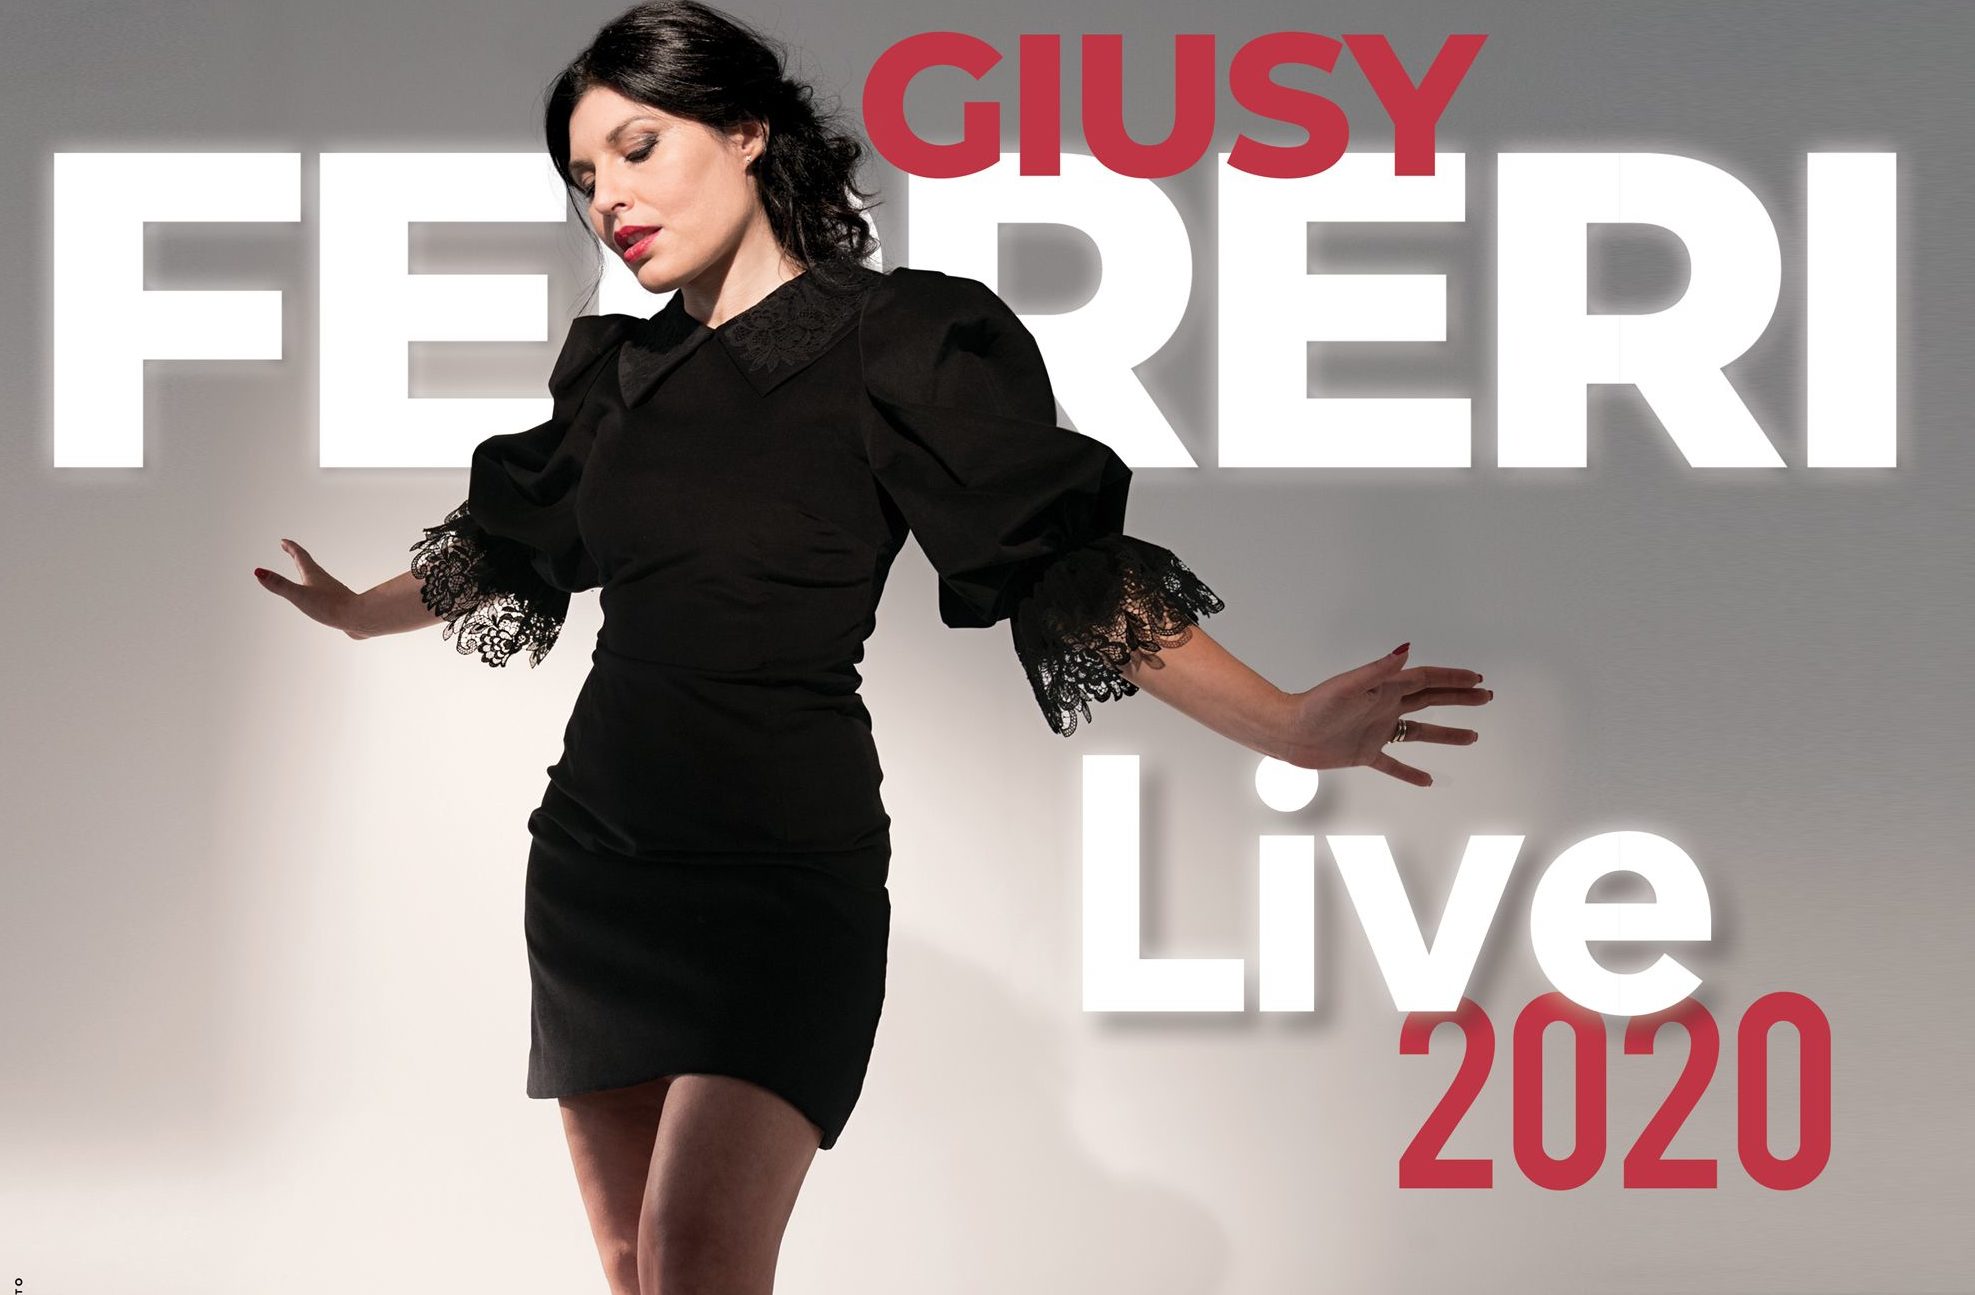 Rinviato a data da destinarsi il tour “Giusy Ferreri Live 2020”